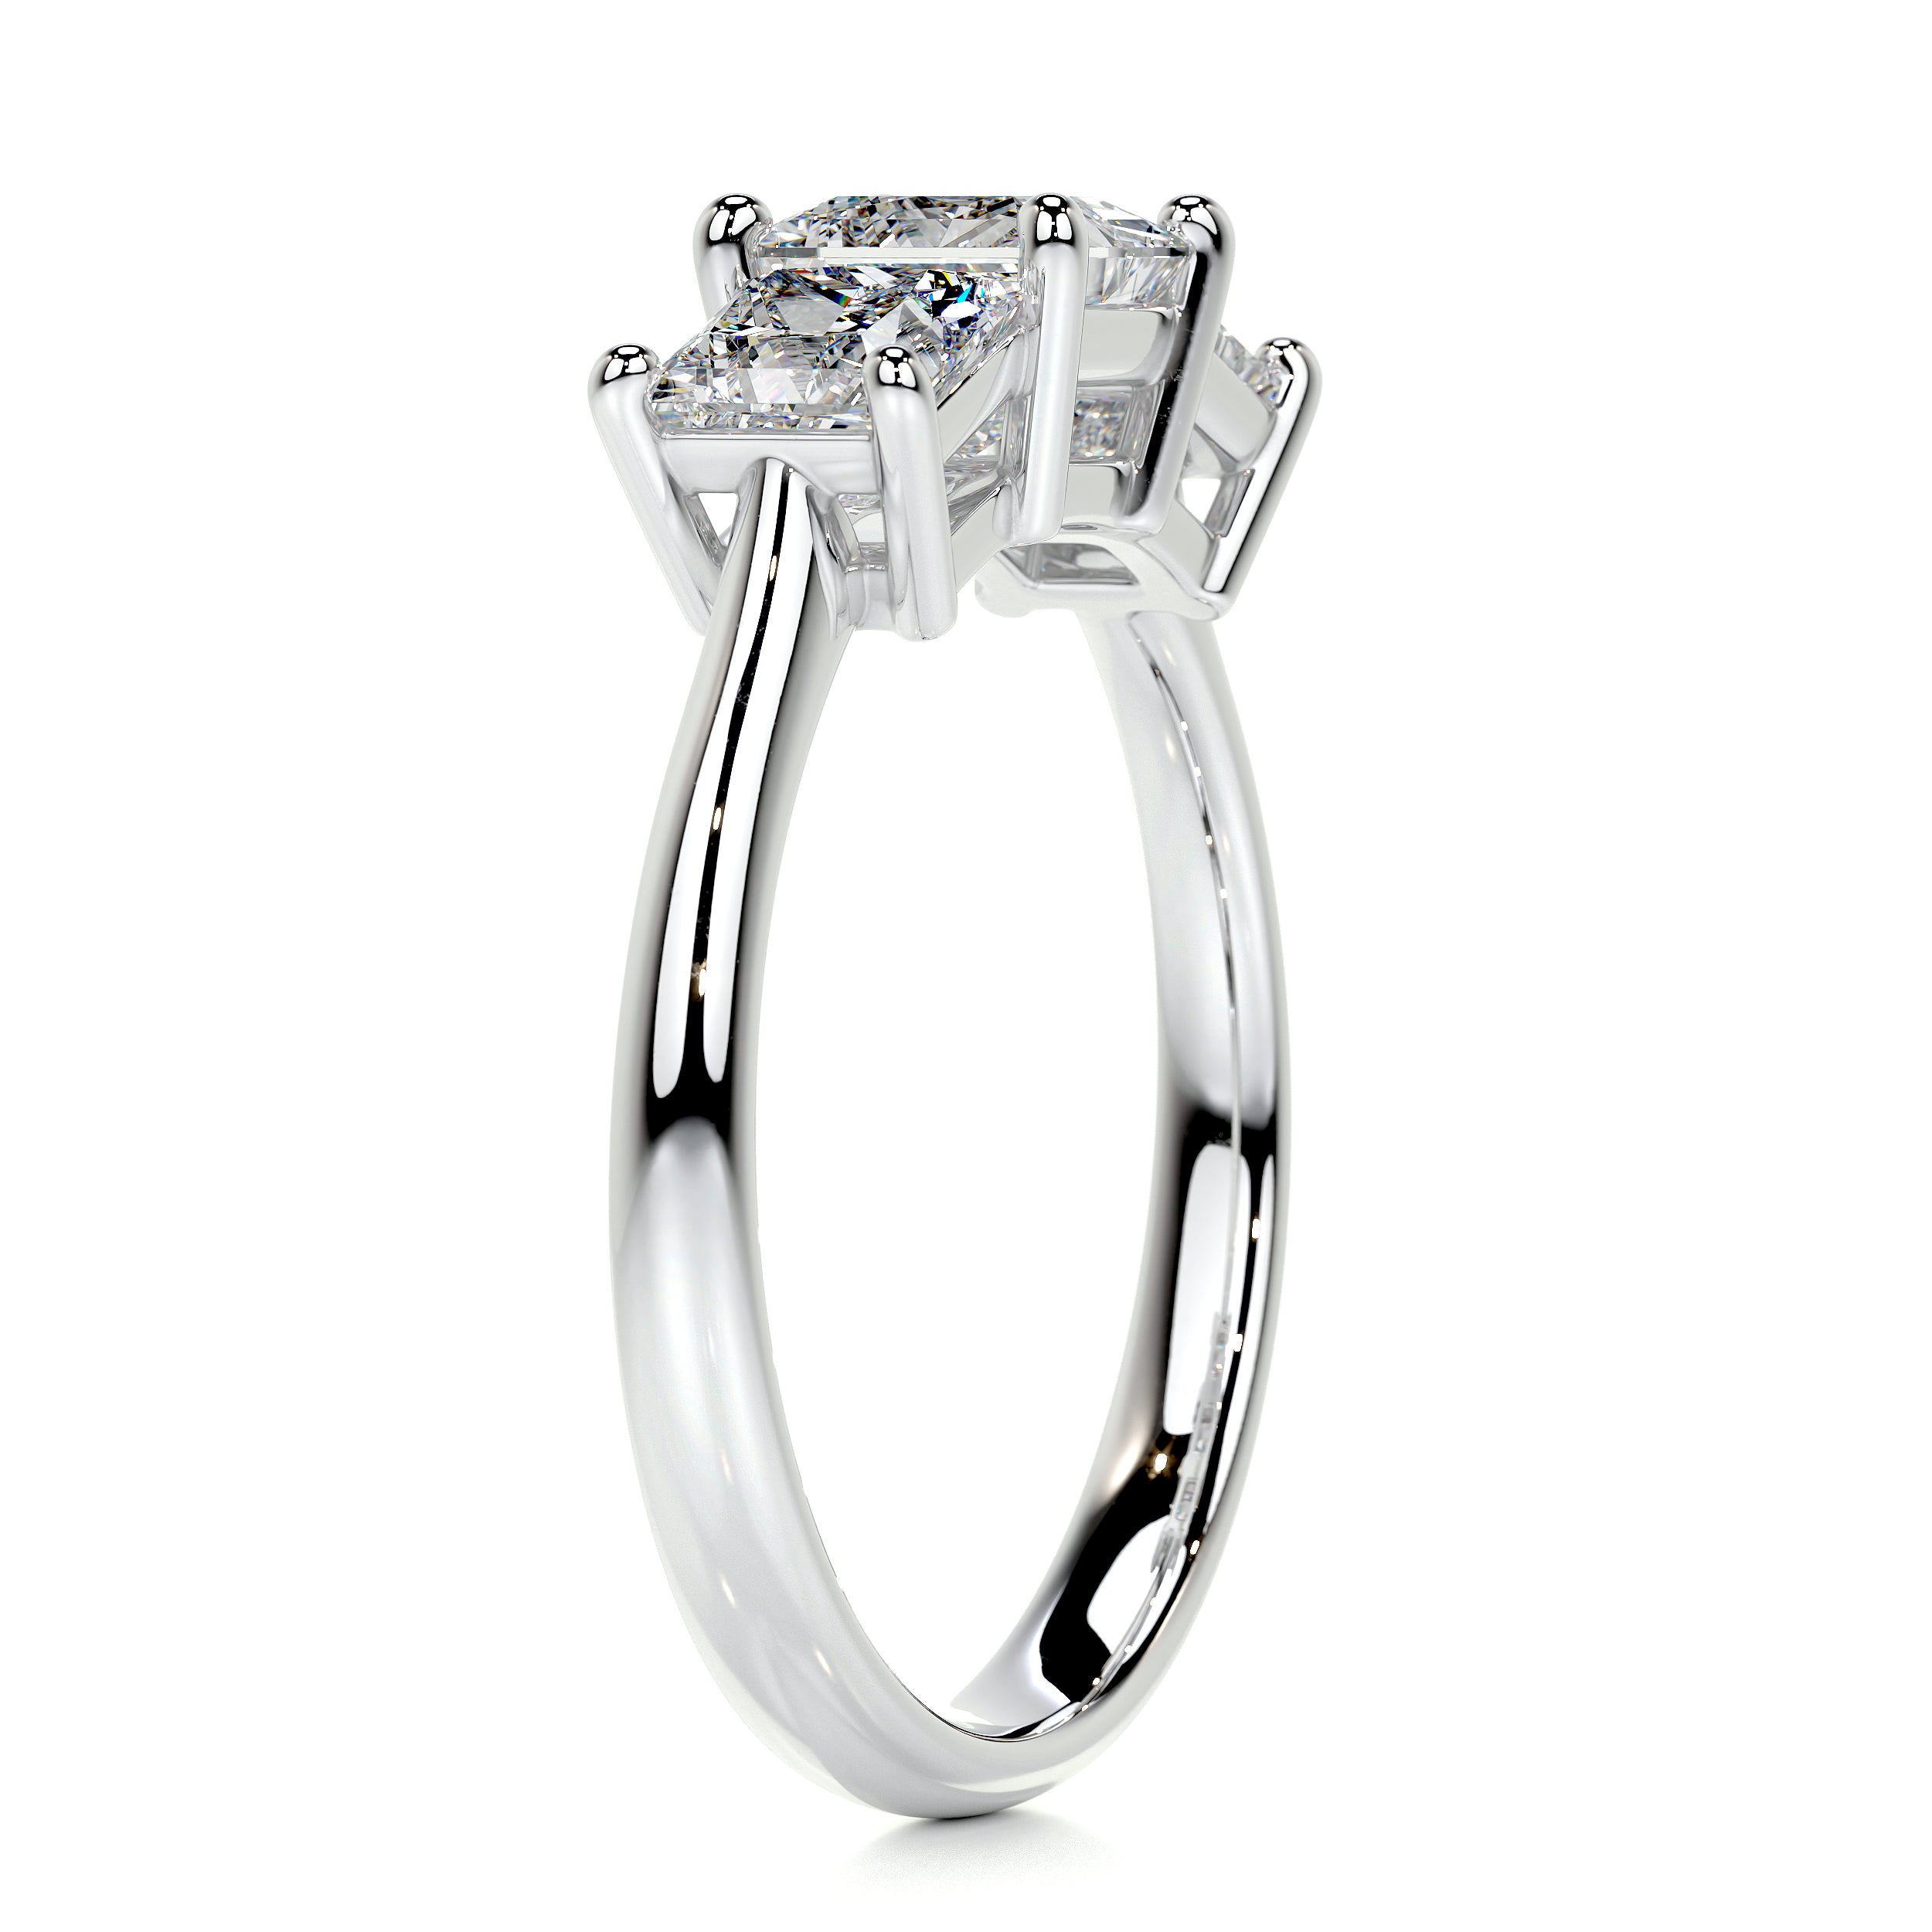 Amanda Diamond Engagement Ring   (3.5 Carat) -14K White Gold